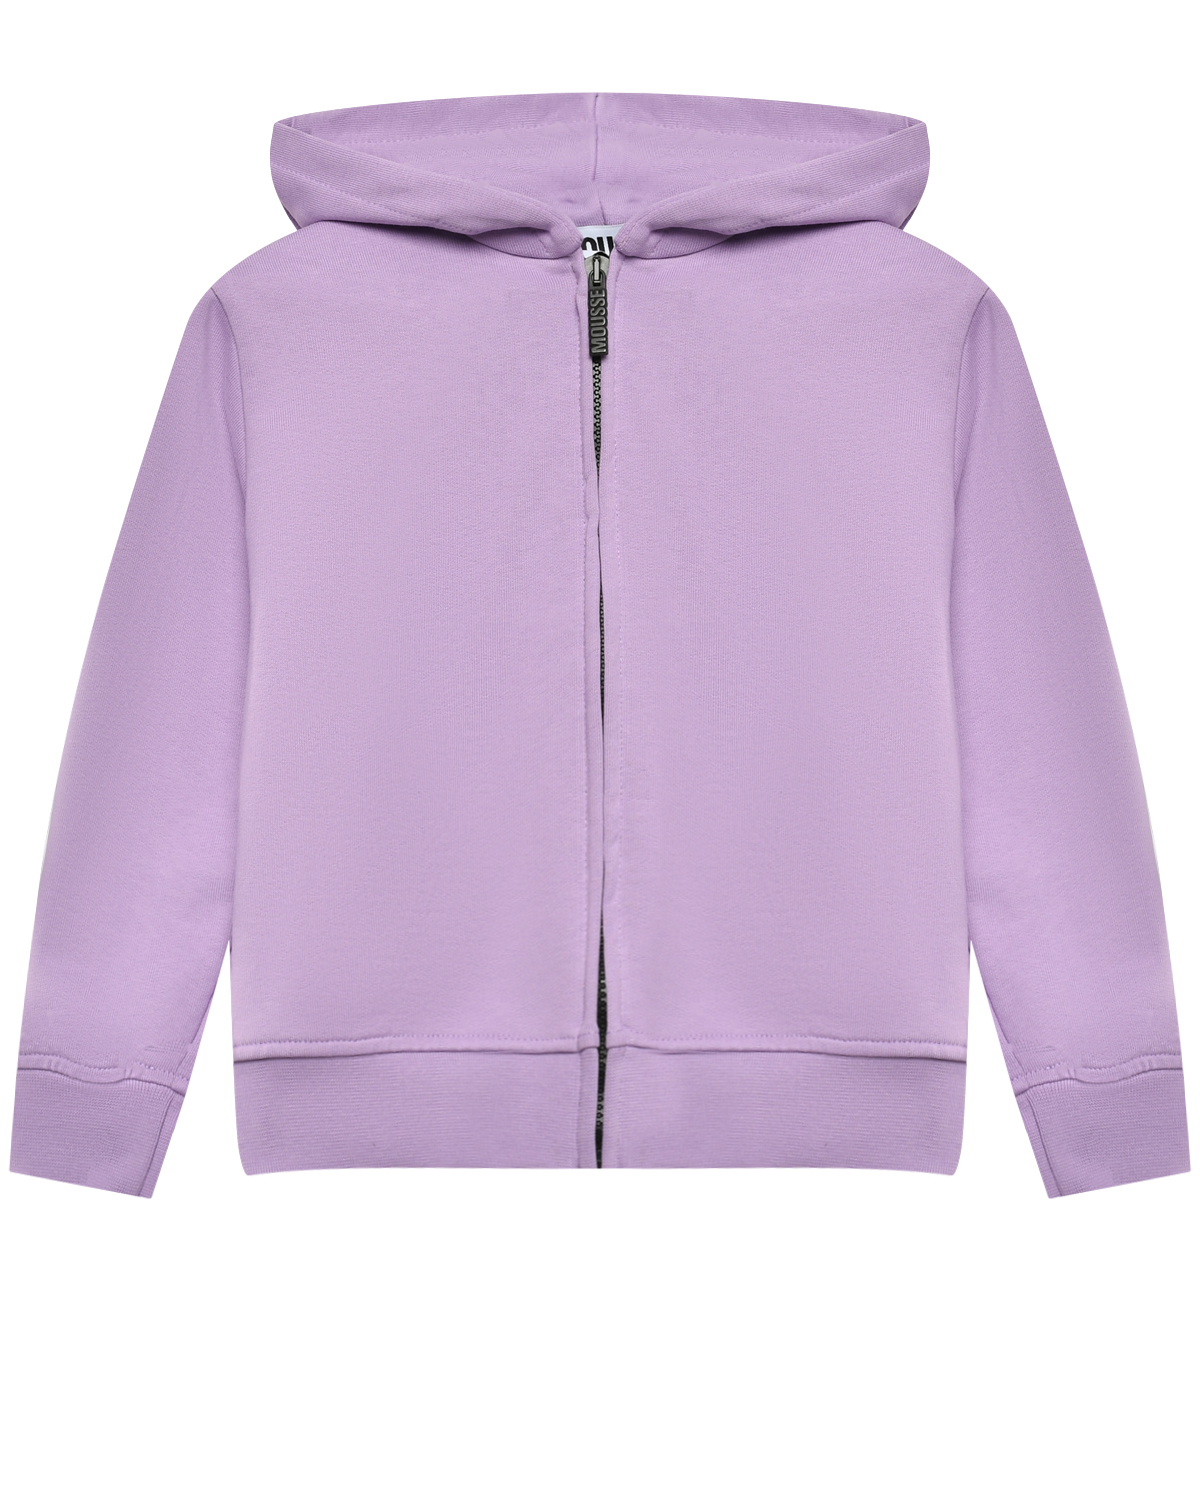 Куртка спортивная с принтом на спине единорог, фиолетовая Mousse kids, размер 116, цвет лиловый